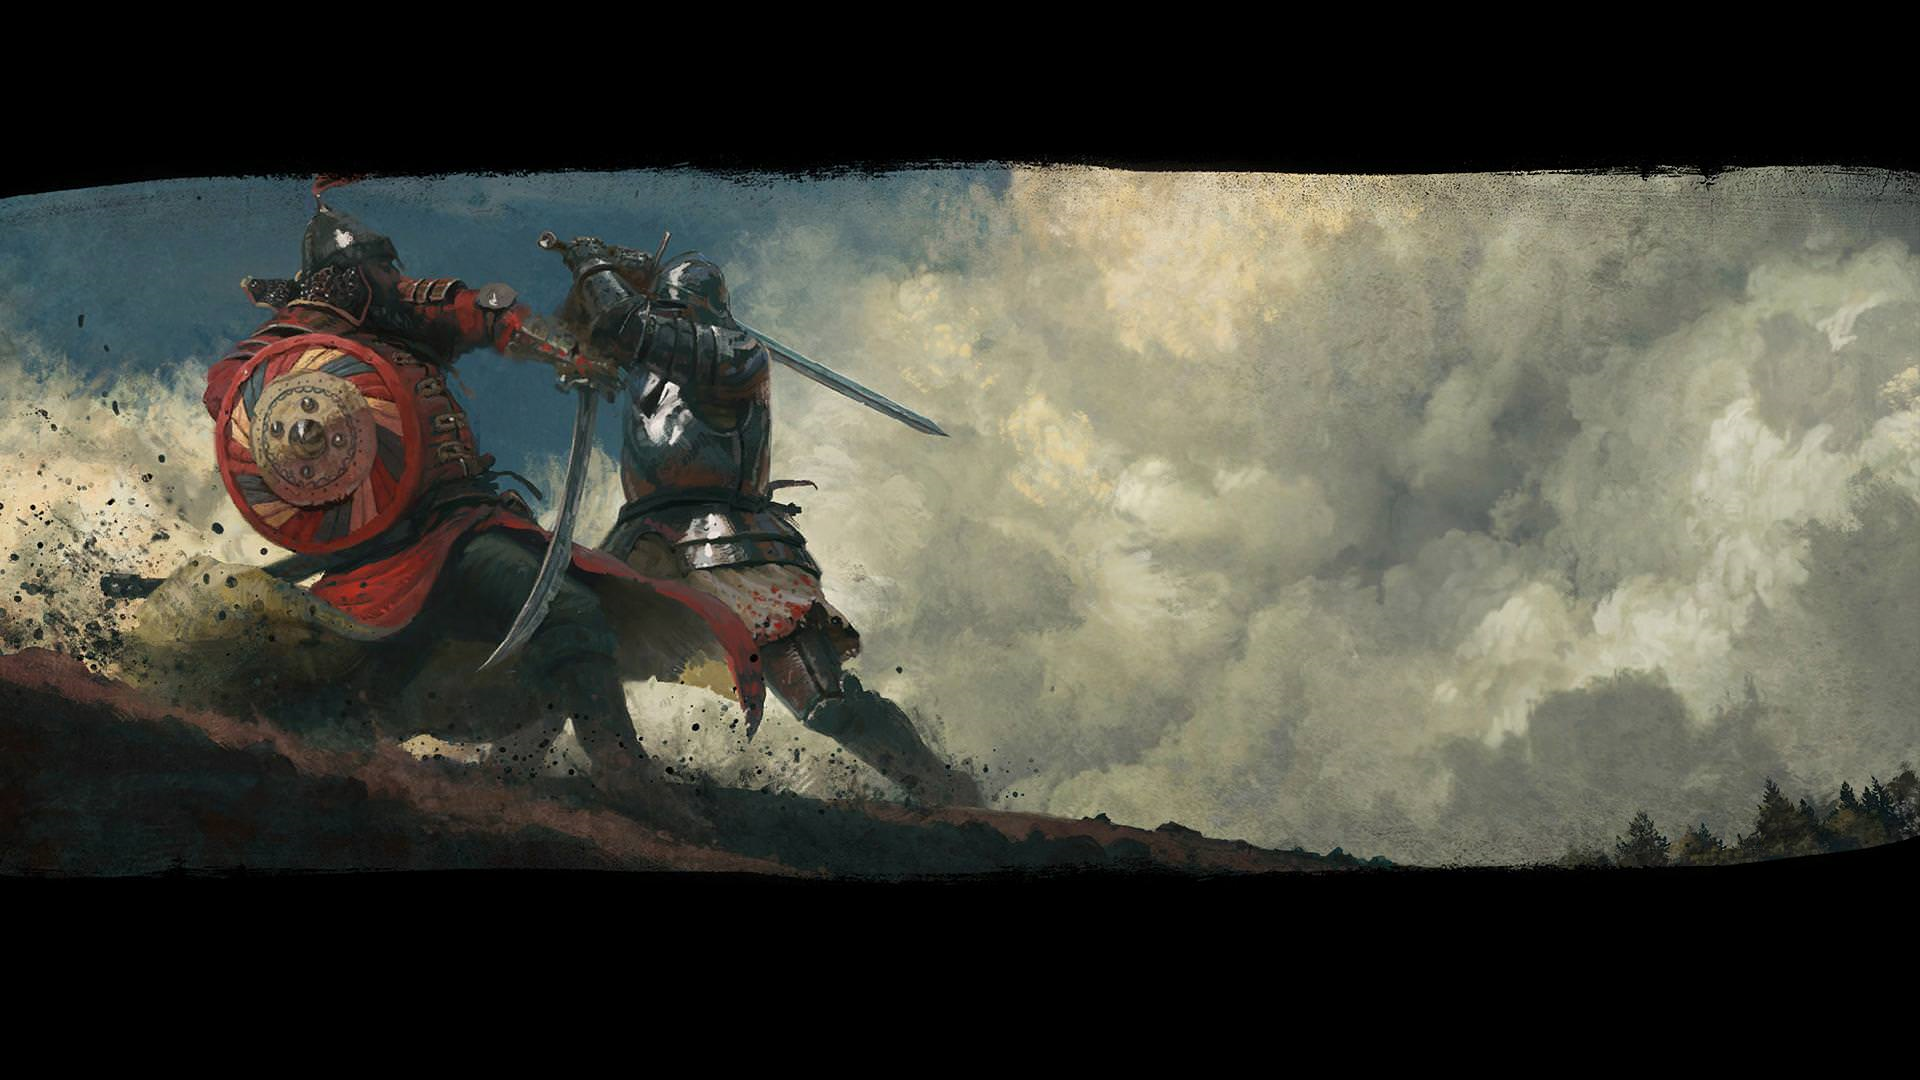 General 1920x1080 Kingdom Come: Deliverance artwork knight warrior